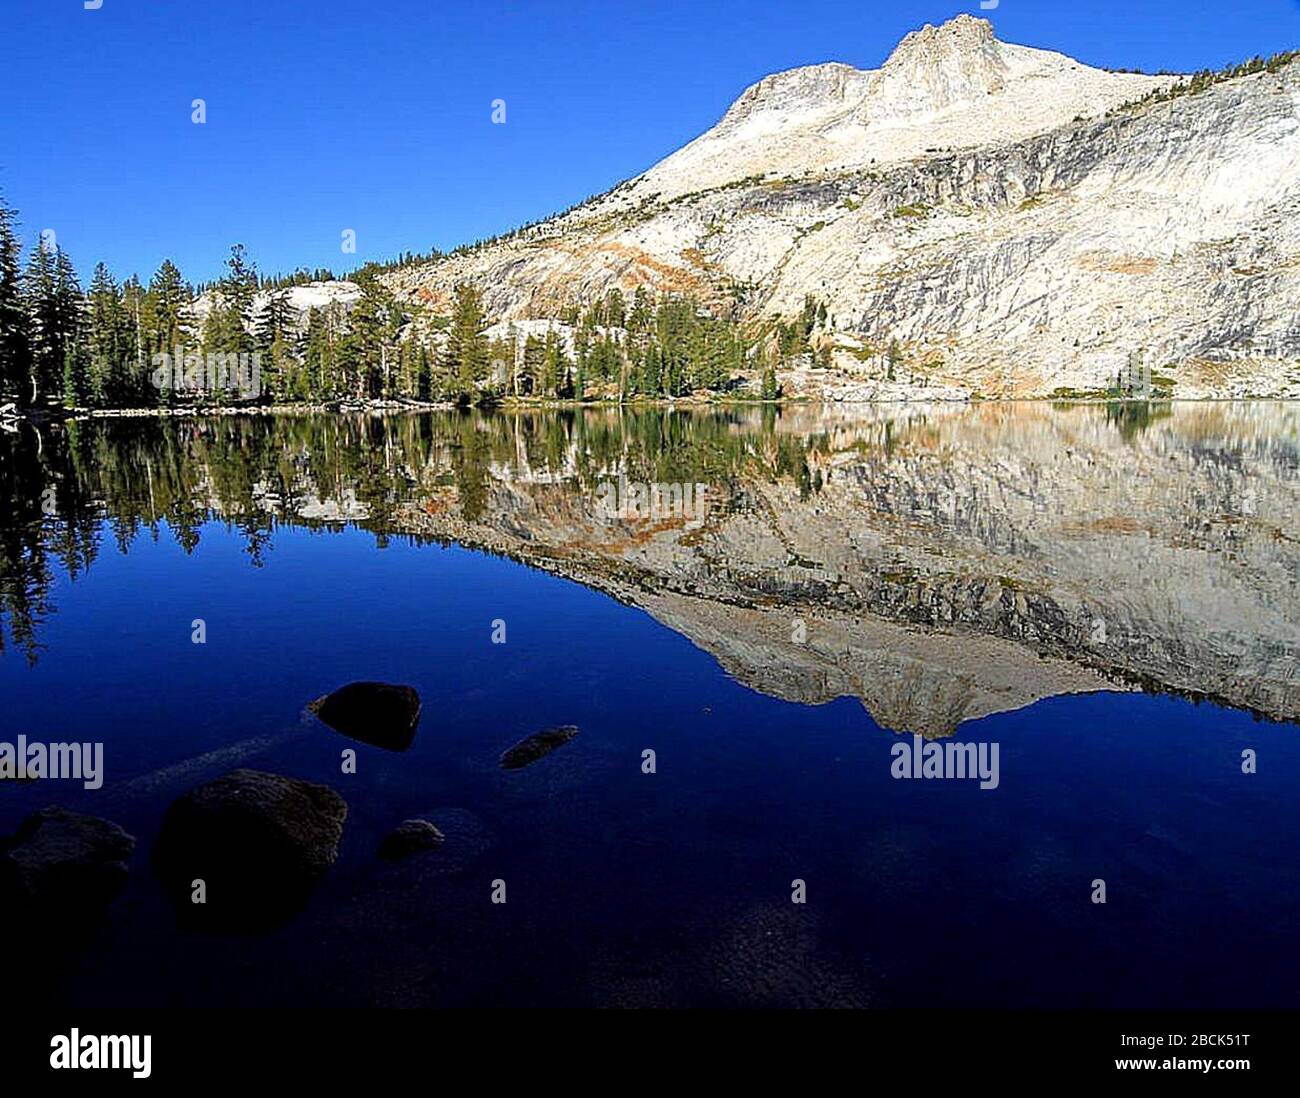 'English: Mai Lake et Mount Hoffmann, parc national de Yosemite; pris le 5 septembre 2004; lien source archivé; Jon Sullivan; ' Banque D'Images